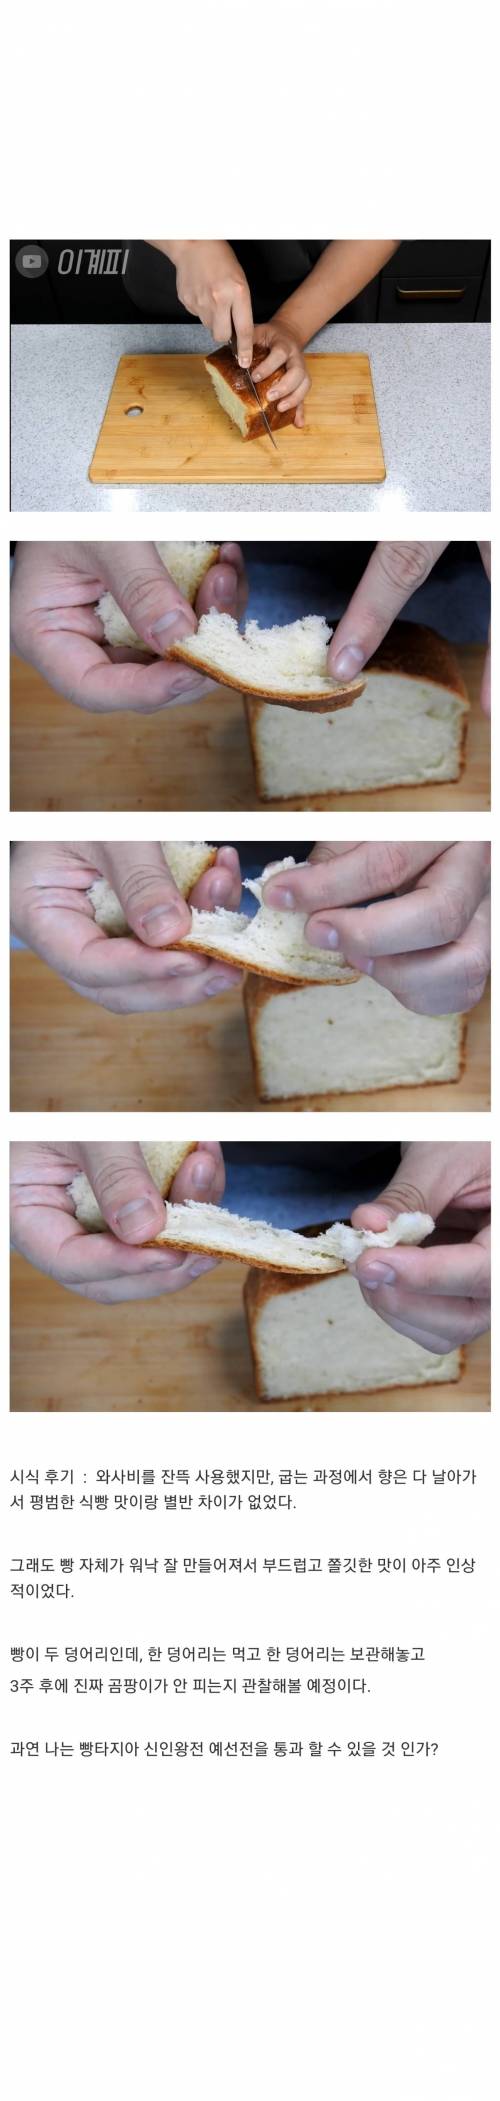 와사비로 식빵 만들기.jpg